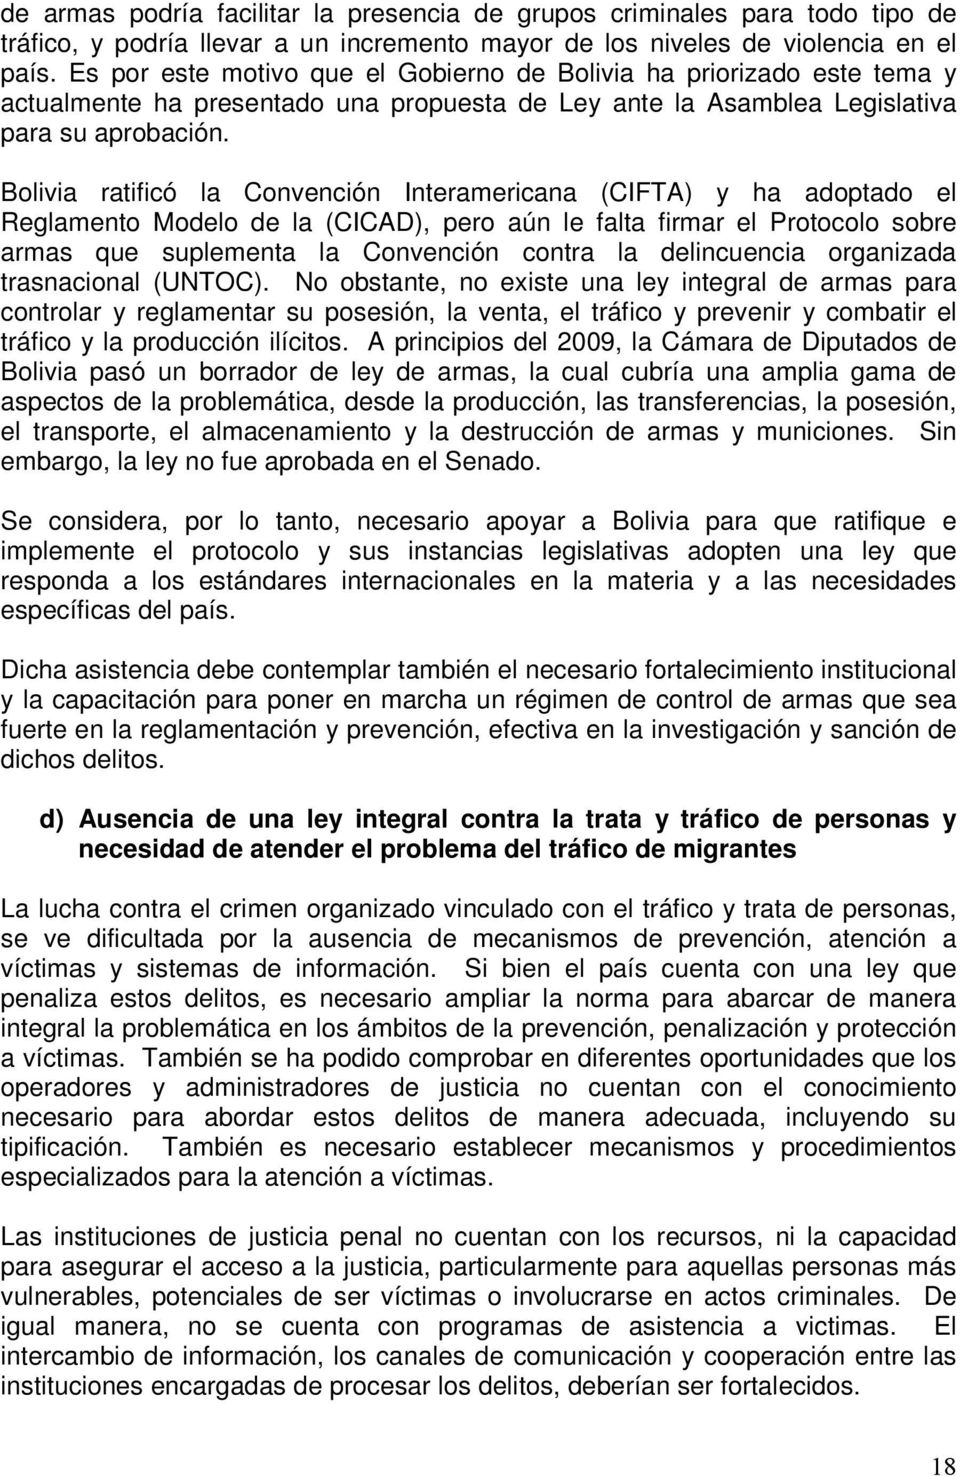 Bolivia ratificó la Convención Interamericana (CIFTA) y ha adoptado el Reglamento Modelo de la (CICAD), pero aún le falta firmar el Protocolo sobre armas que suplementa la Convención contra la